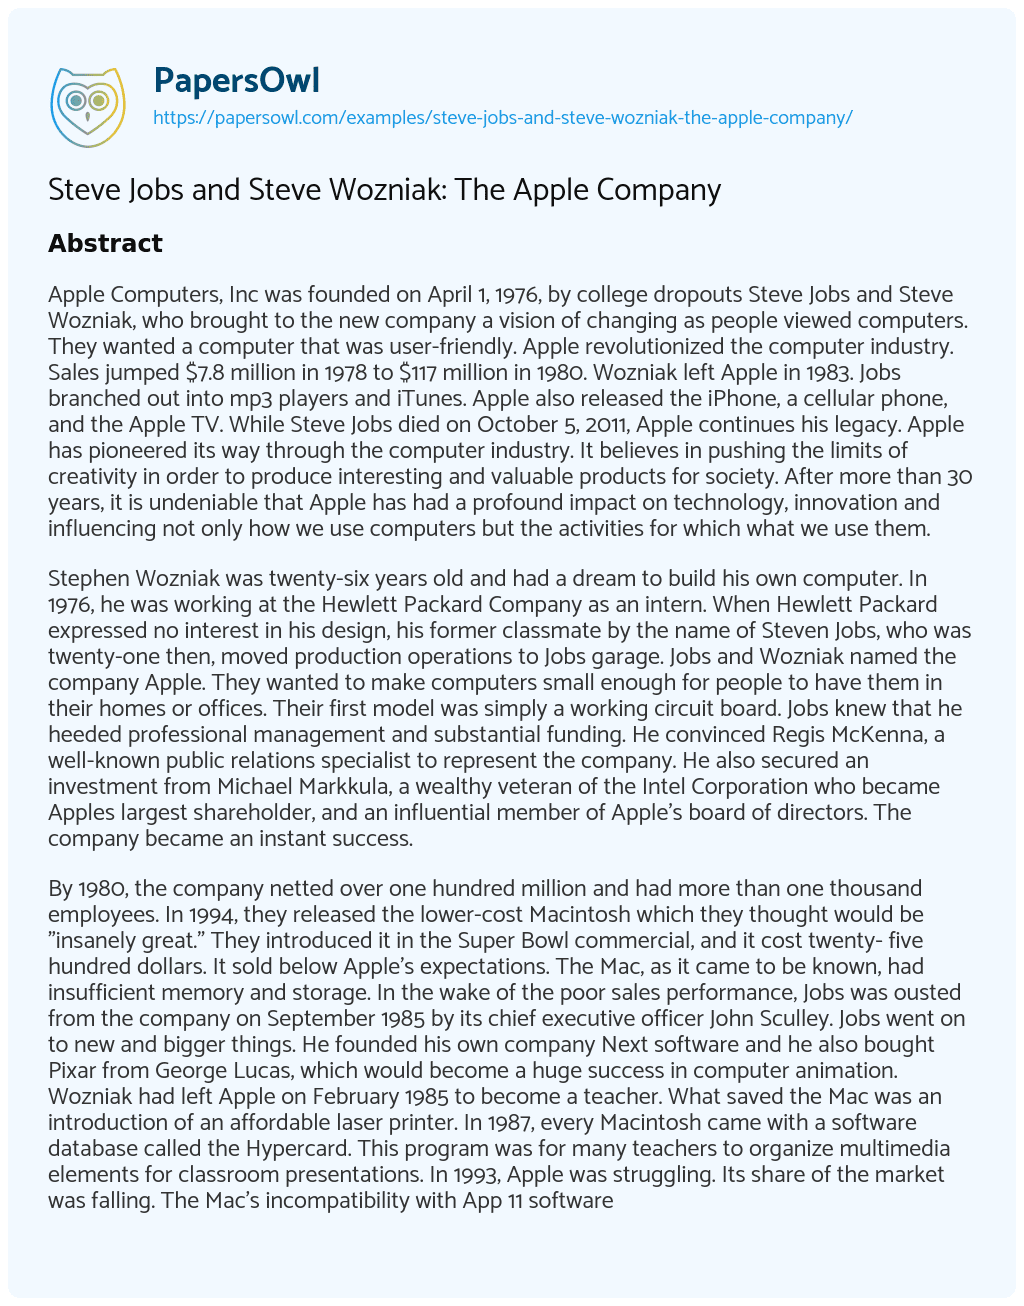 Essay on Steve Jobs and Steve Wozniak: the Apple Company